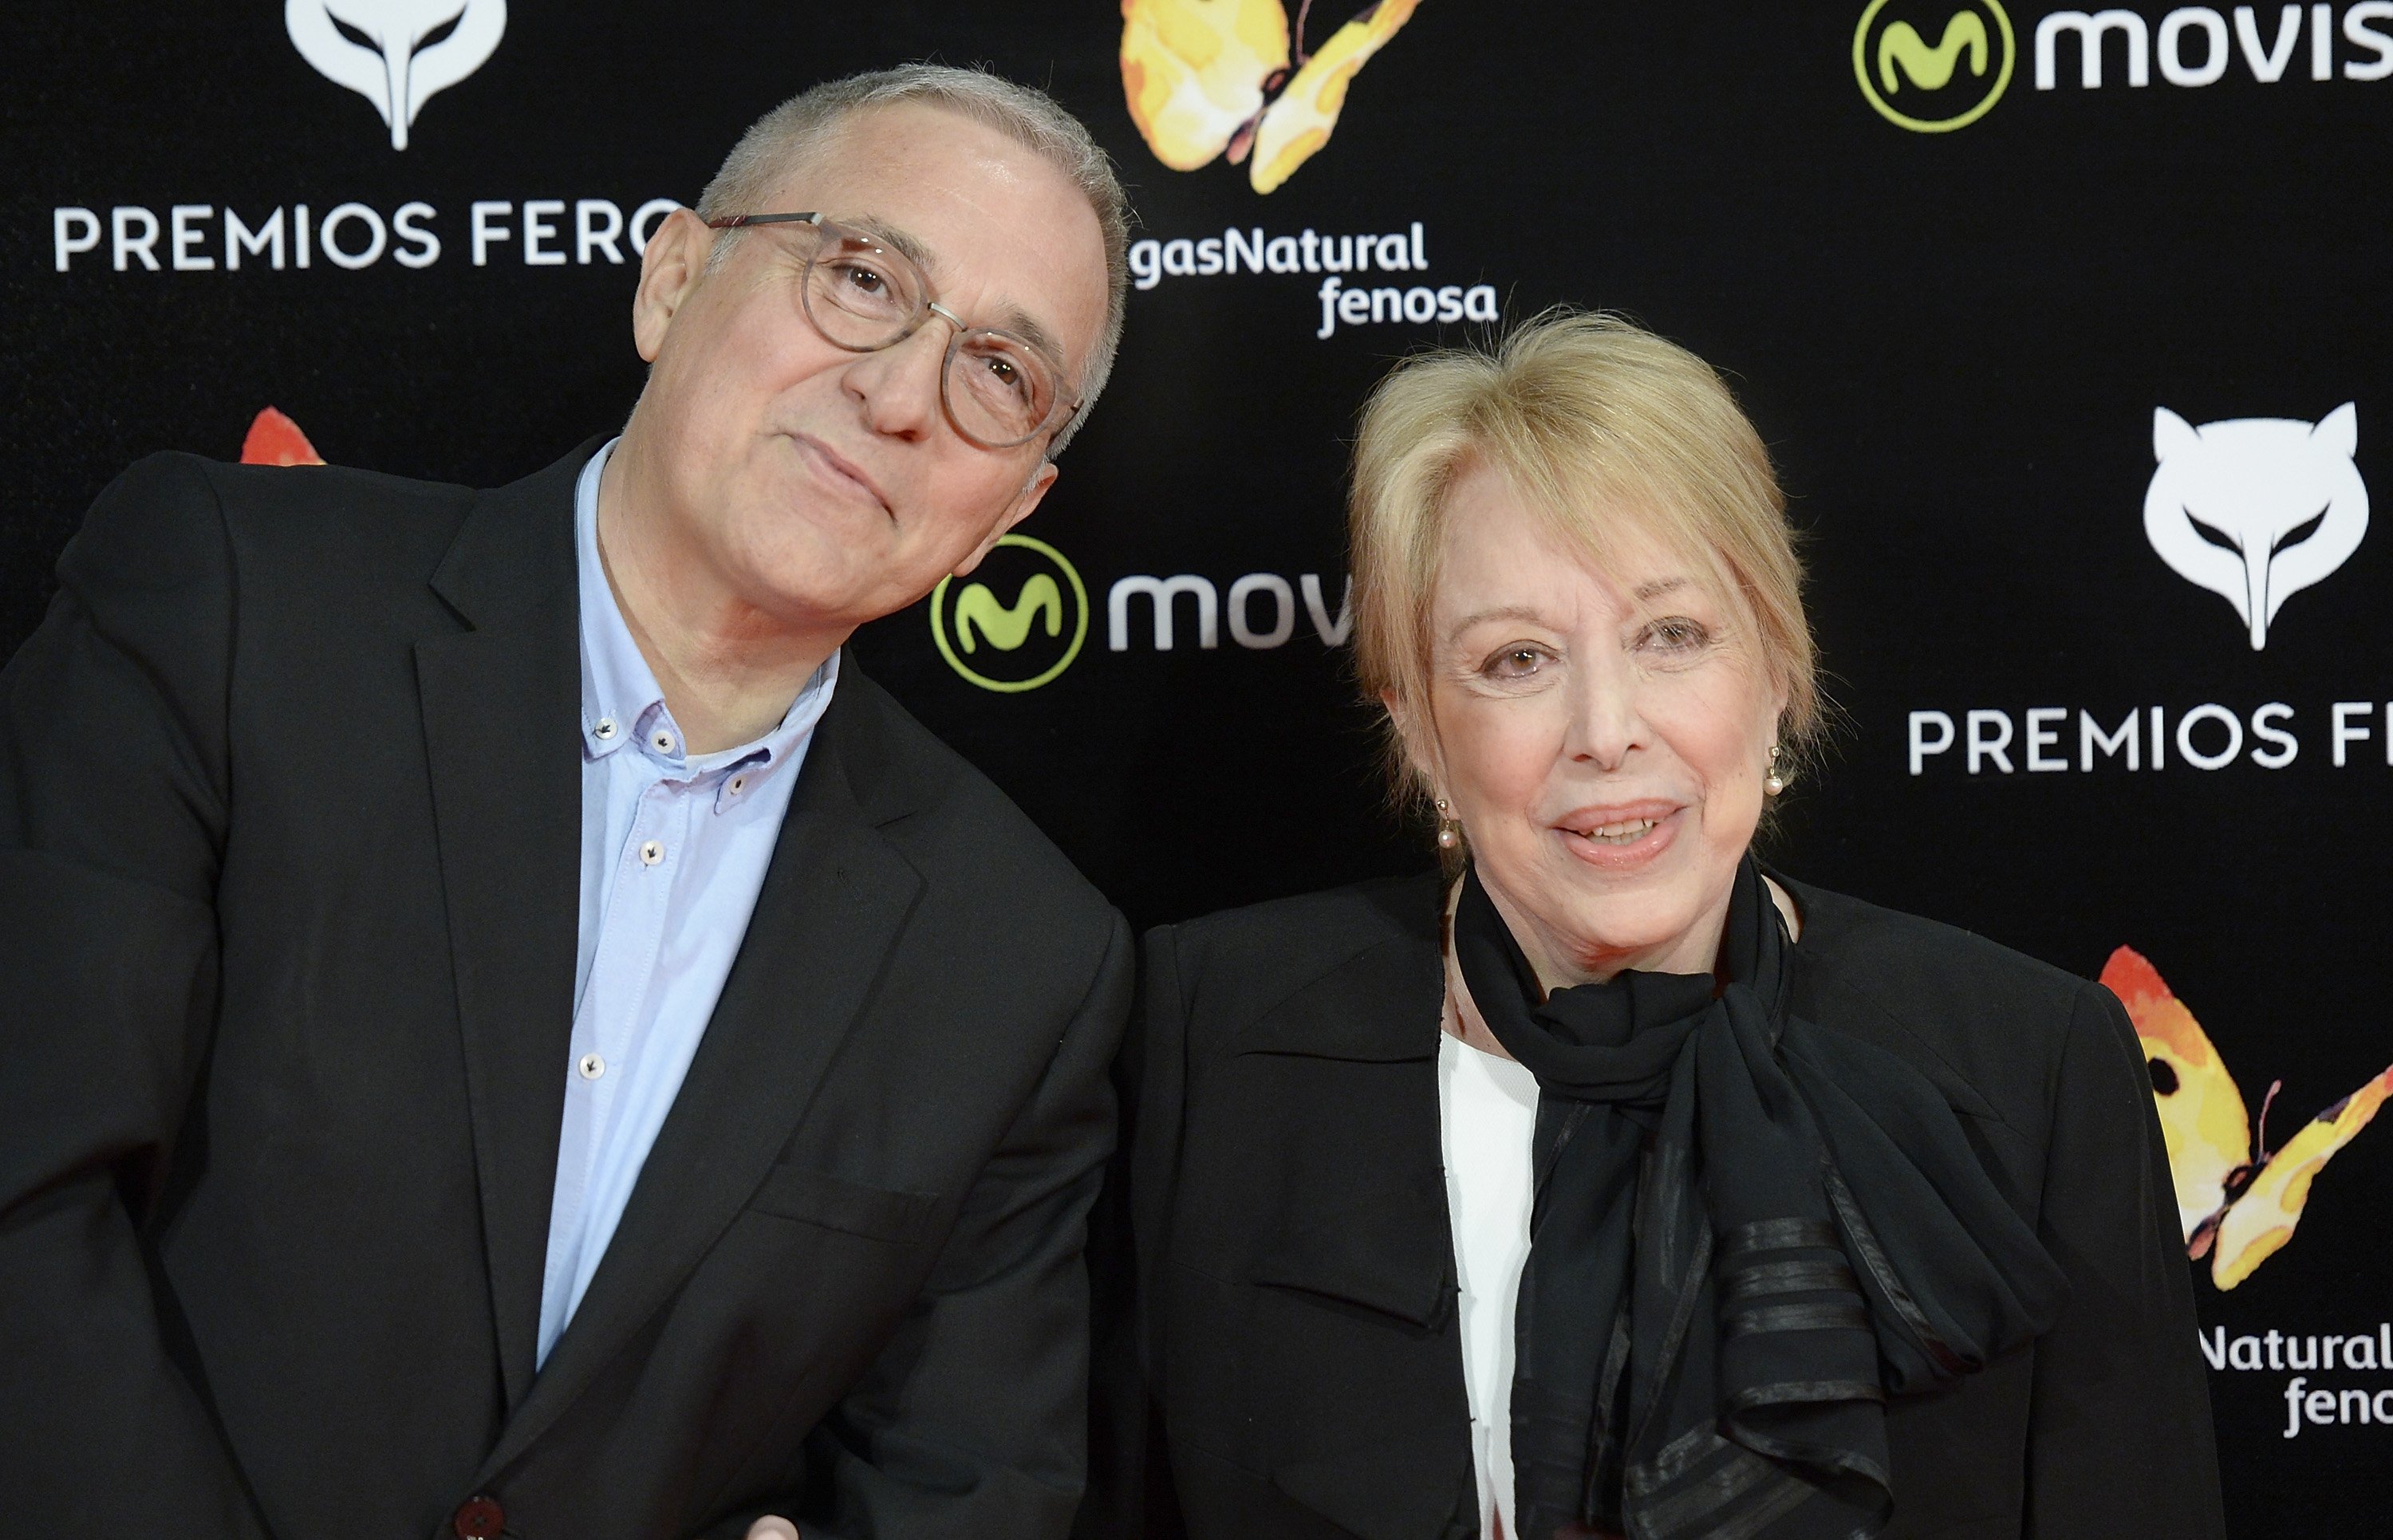 Xavier Sardà y Rosa María Sardà en los Premios Feroz Cinema 2016 el 19 de enero de 2016 en Madrid, España.  | Foto: Getty Images 